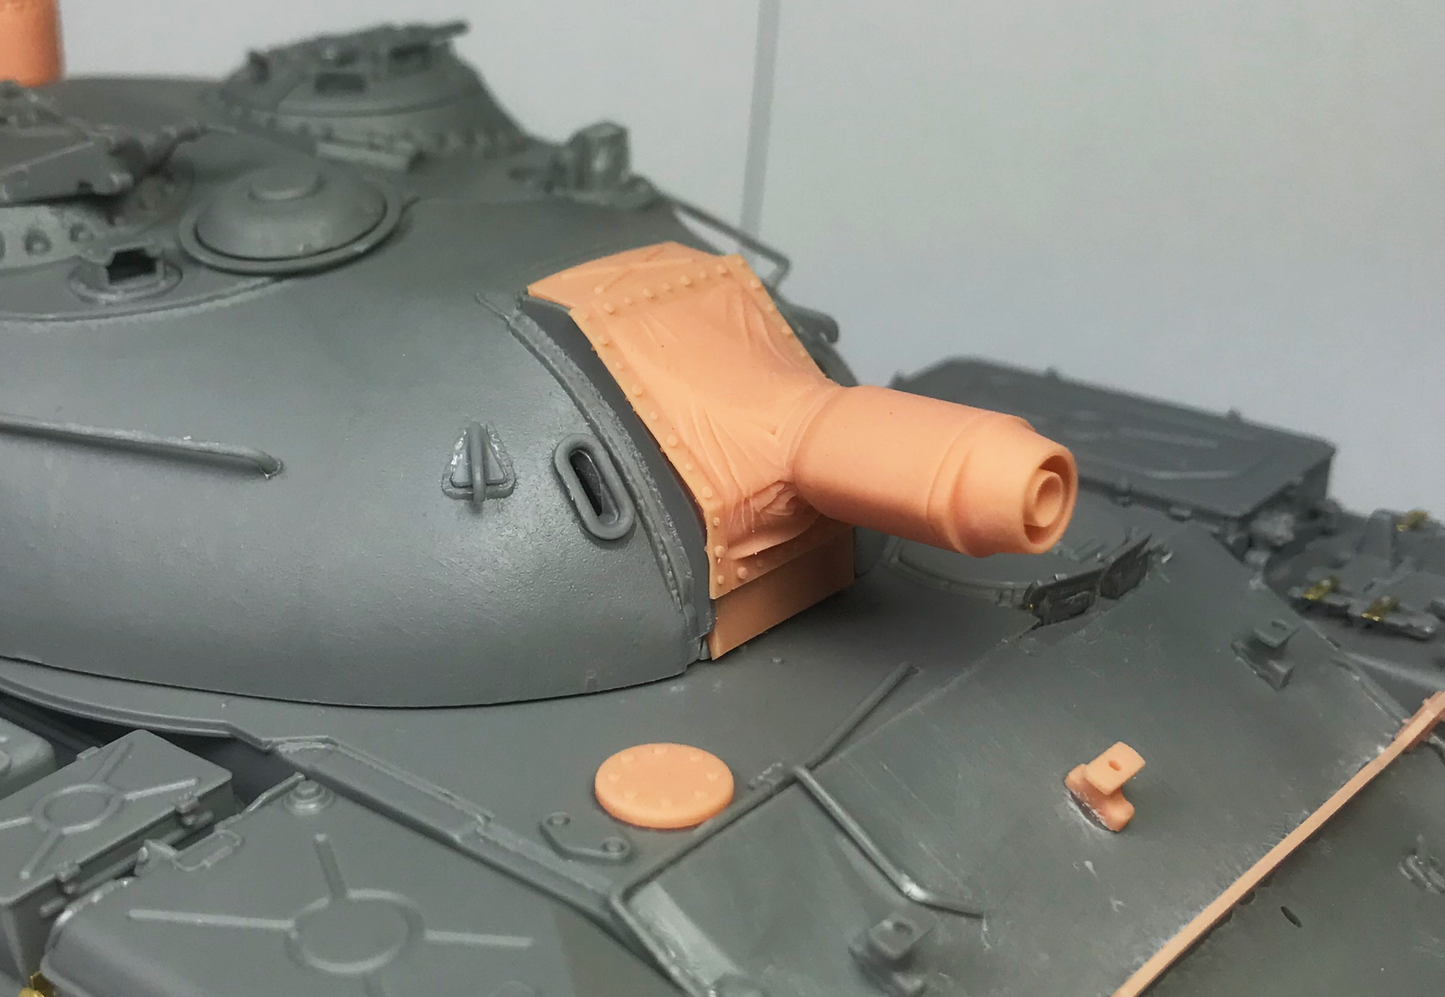 1/35 Object 483 'OT-54' Flame Tank Conversion Kit